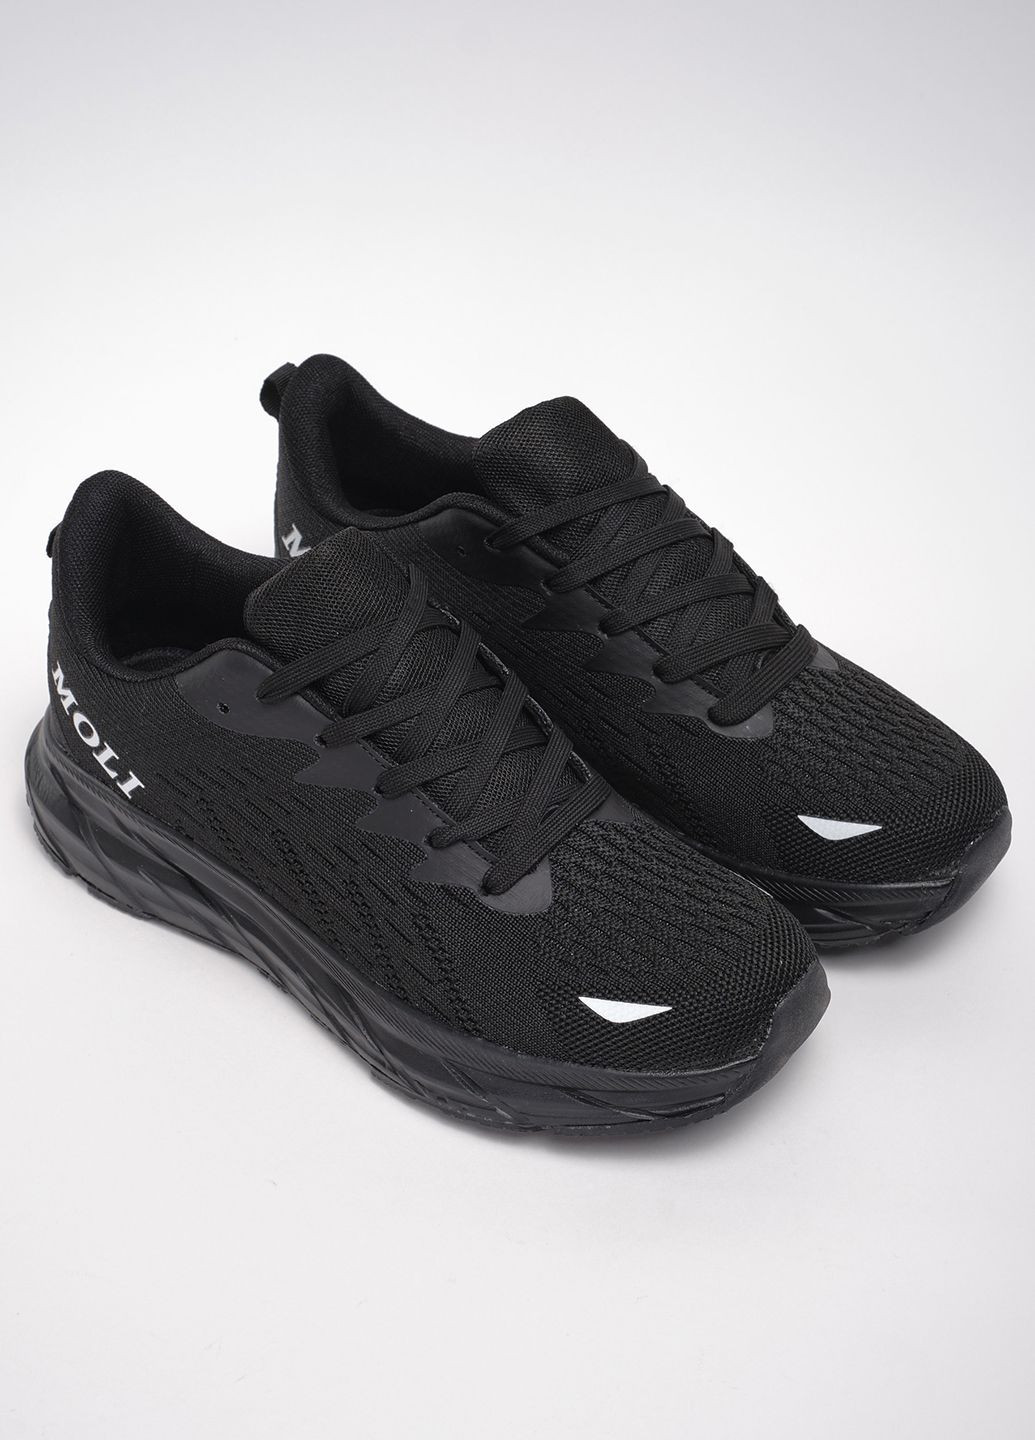 Черные демисезонные кроссовки спорт a050-1 текстиль черный норма 342948 Power